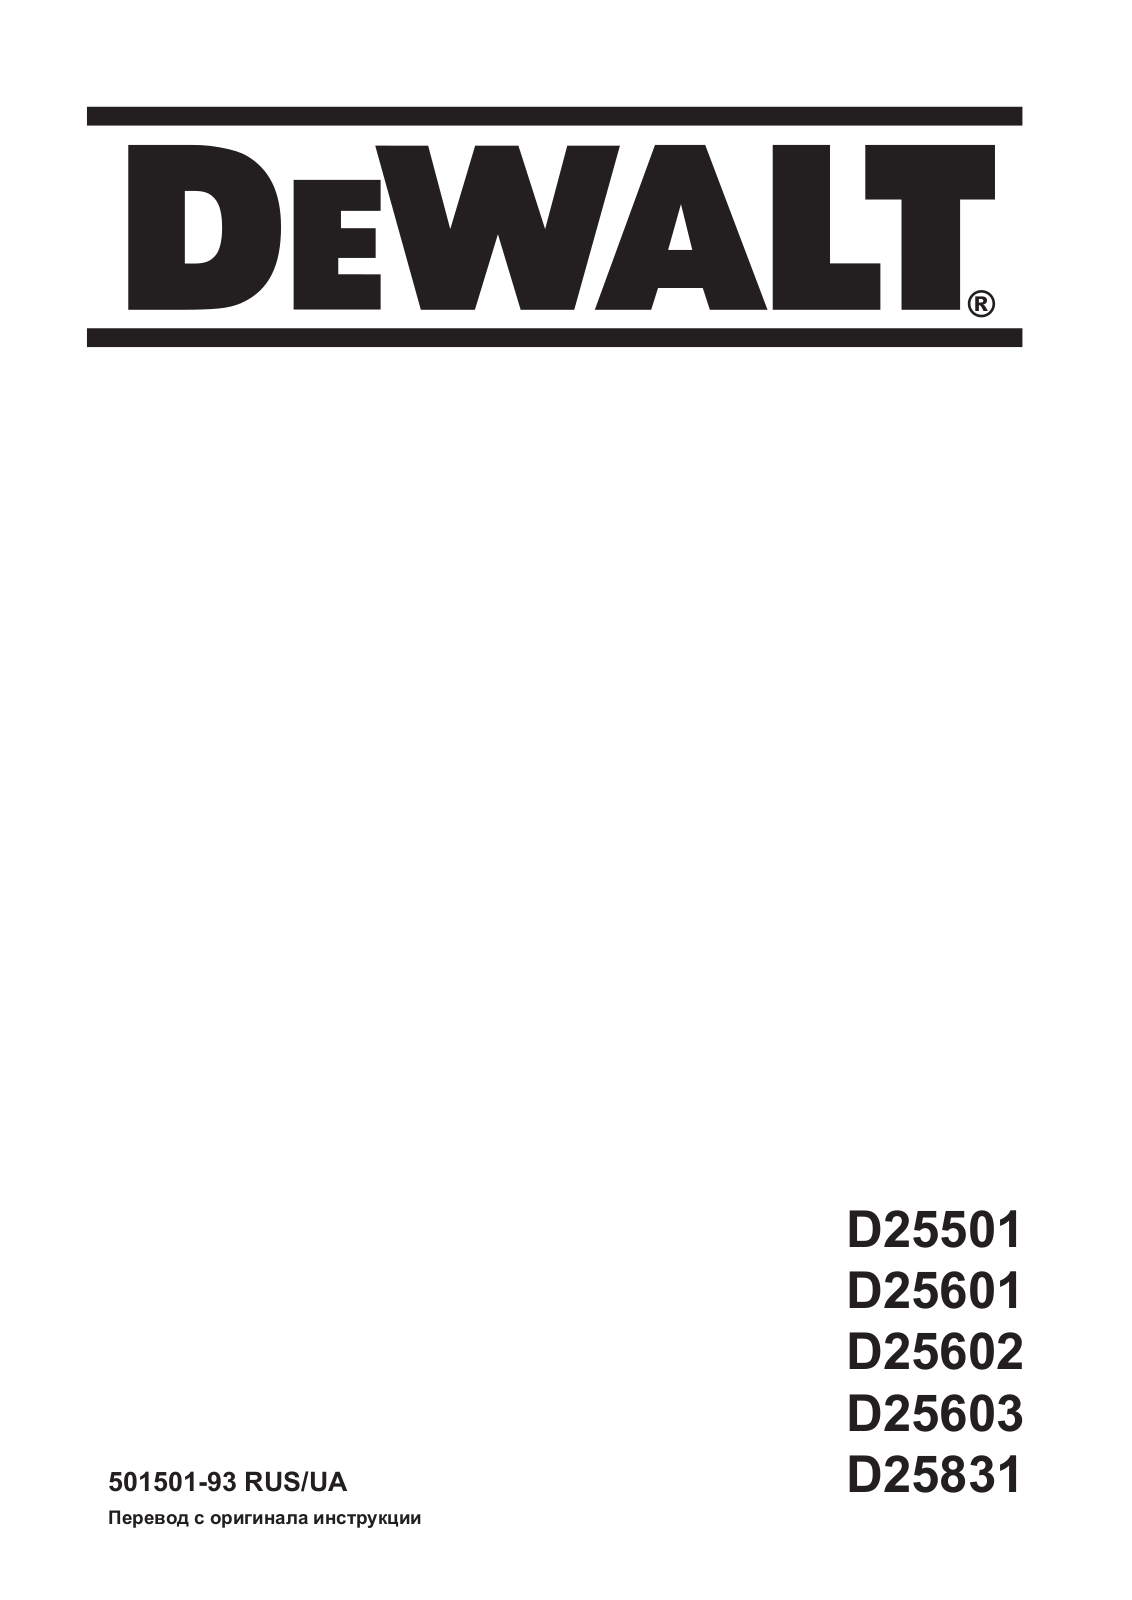 DEWALT D25831 User Manual